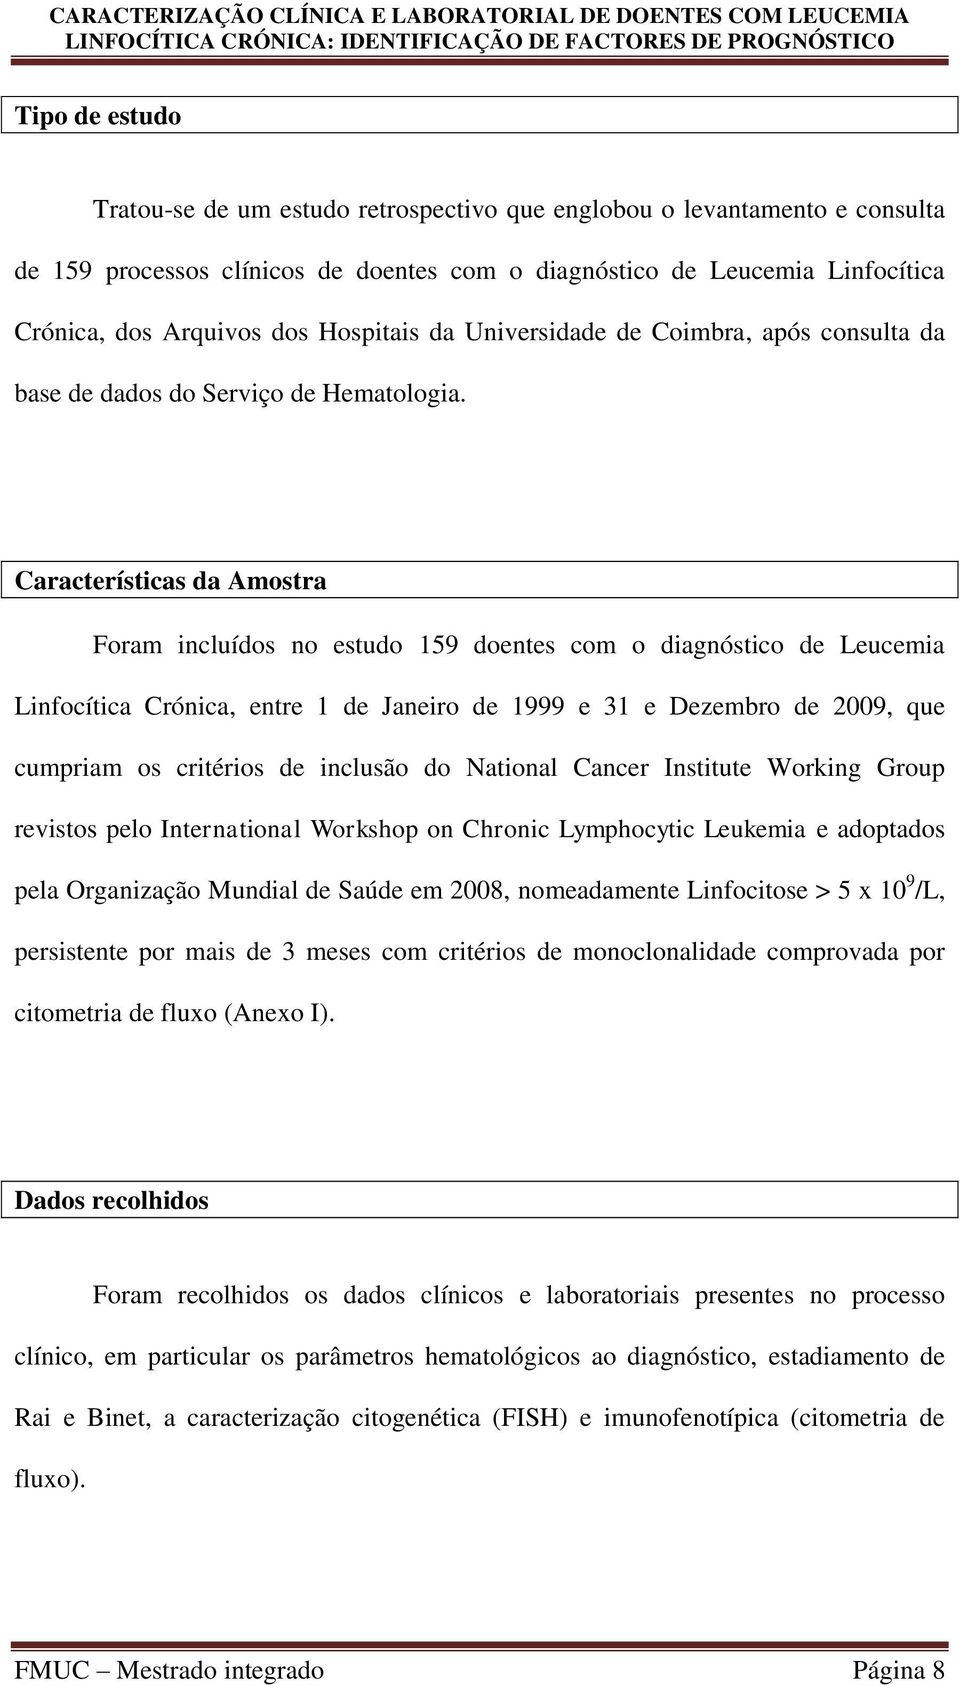 Características da Amostra Foram incluídos no estudo 159 doentes com o diagnóstico de Leucemia Linfocítica Crónica, entre 1 de Janeiro de 1999 e 31 e Dezembro de 2009, que cumpriam os critérios de